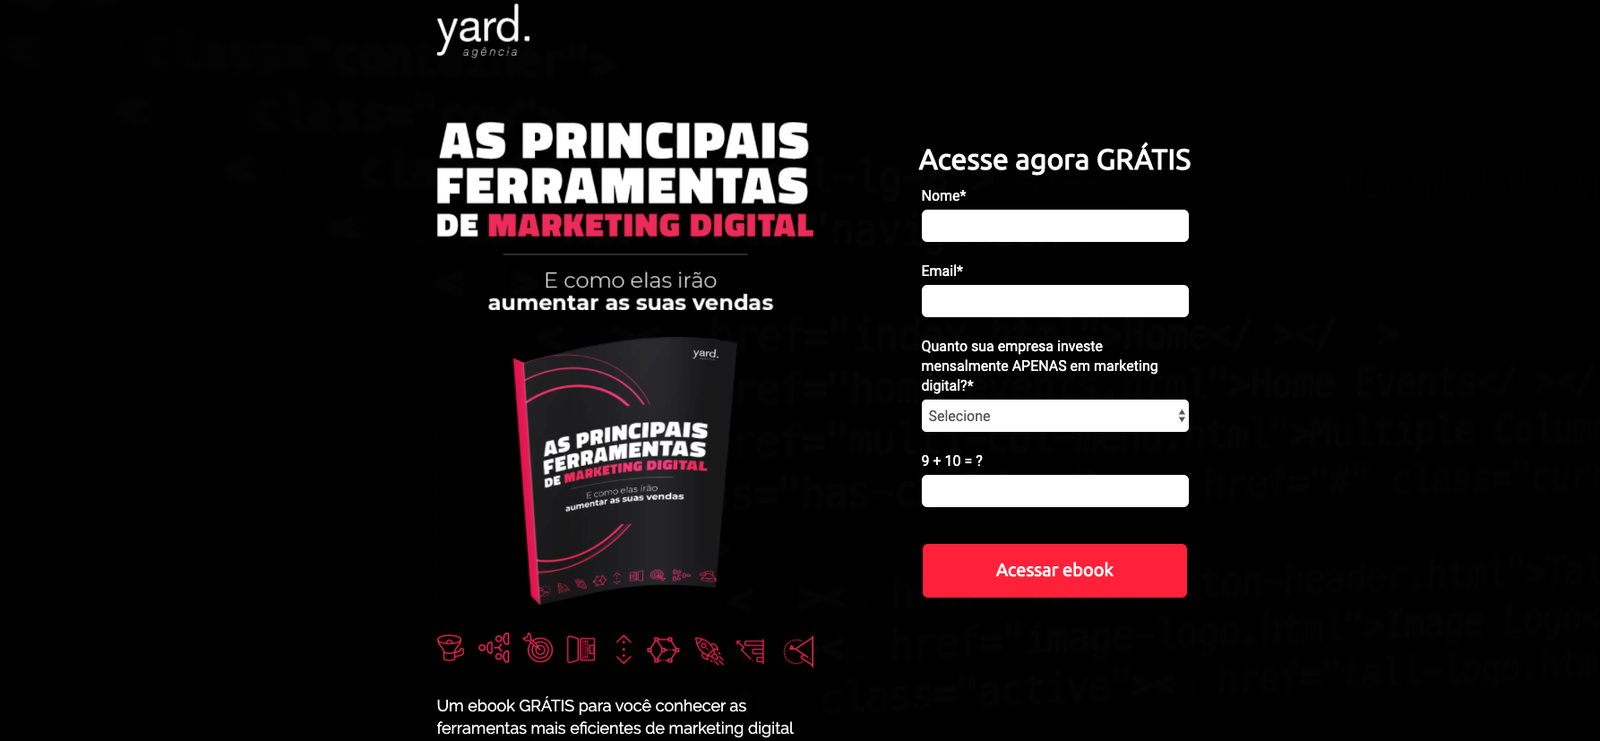 Exemplo de estrutura de uma landing page ofertando um conteúdo sobre as principais ferramentas de marketing digital.